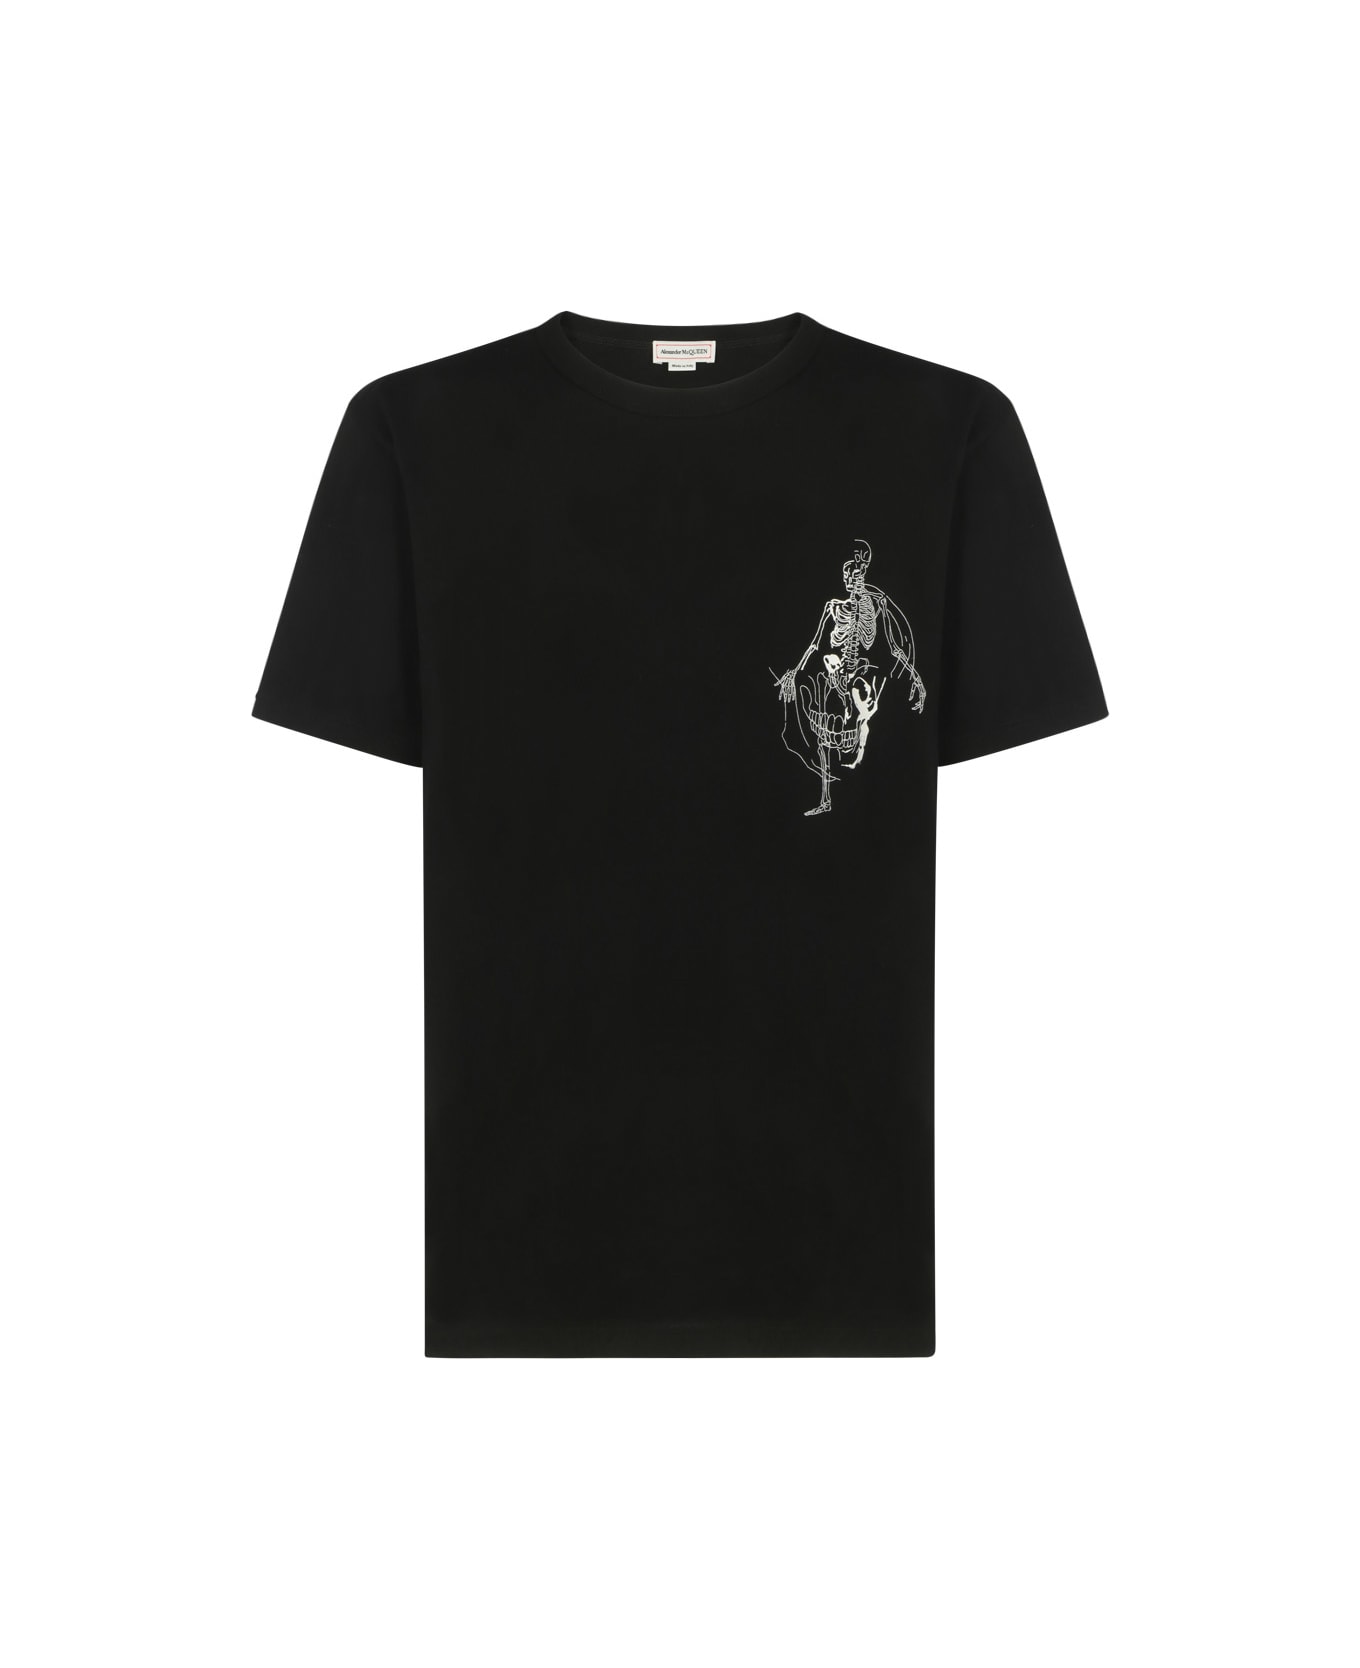 Alexander McQueen T-shirt - Black/ivory